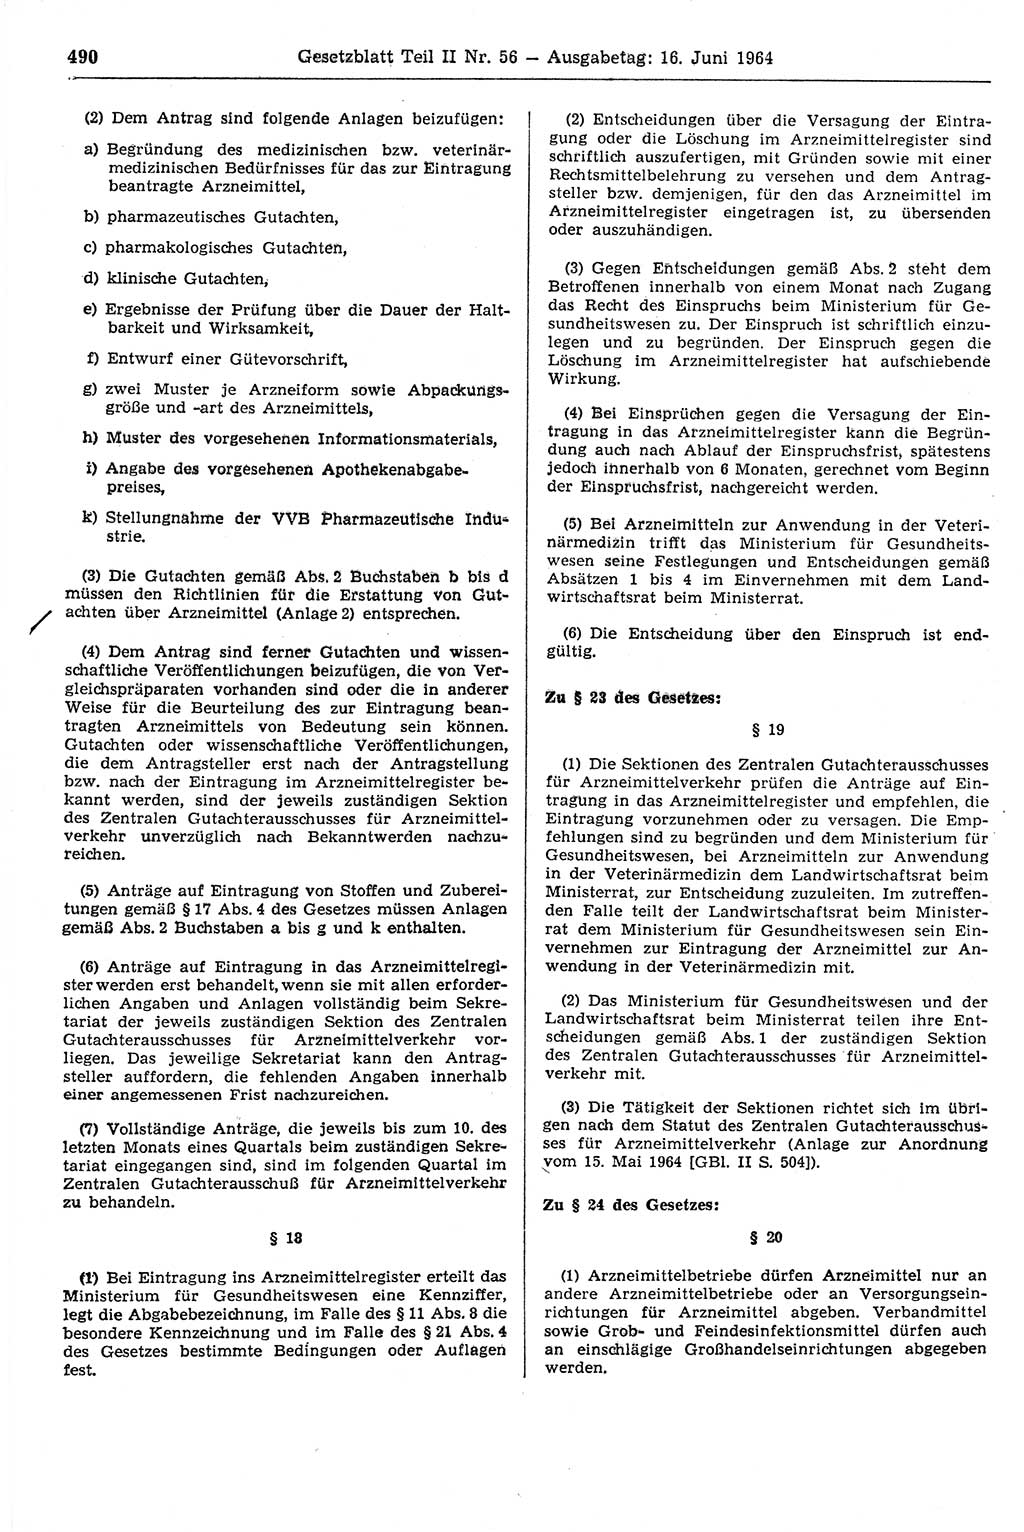 Gesetzblatt (GBl.) der Deutschen Demokratischen Republik (DDR) Teil ⅠⅠ 1964, Seite 490 (GBl. DDR ⅠⅠ 1964, S. 490)